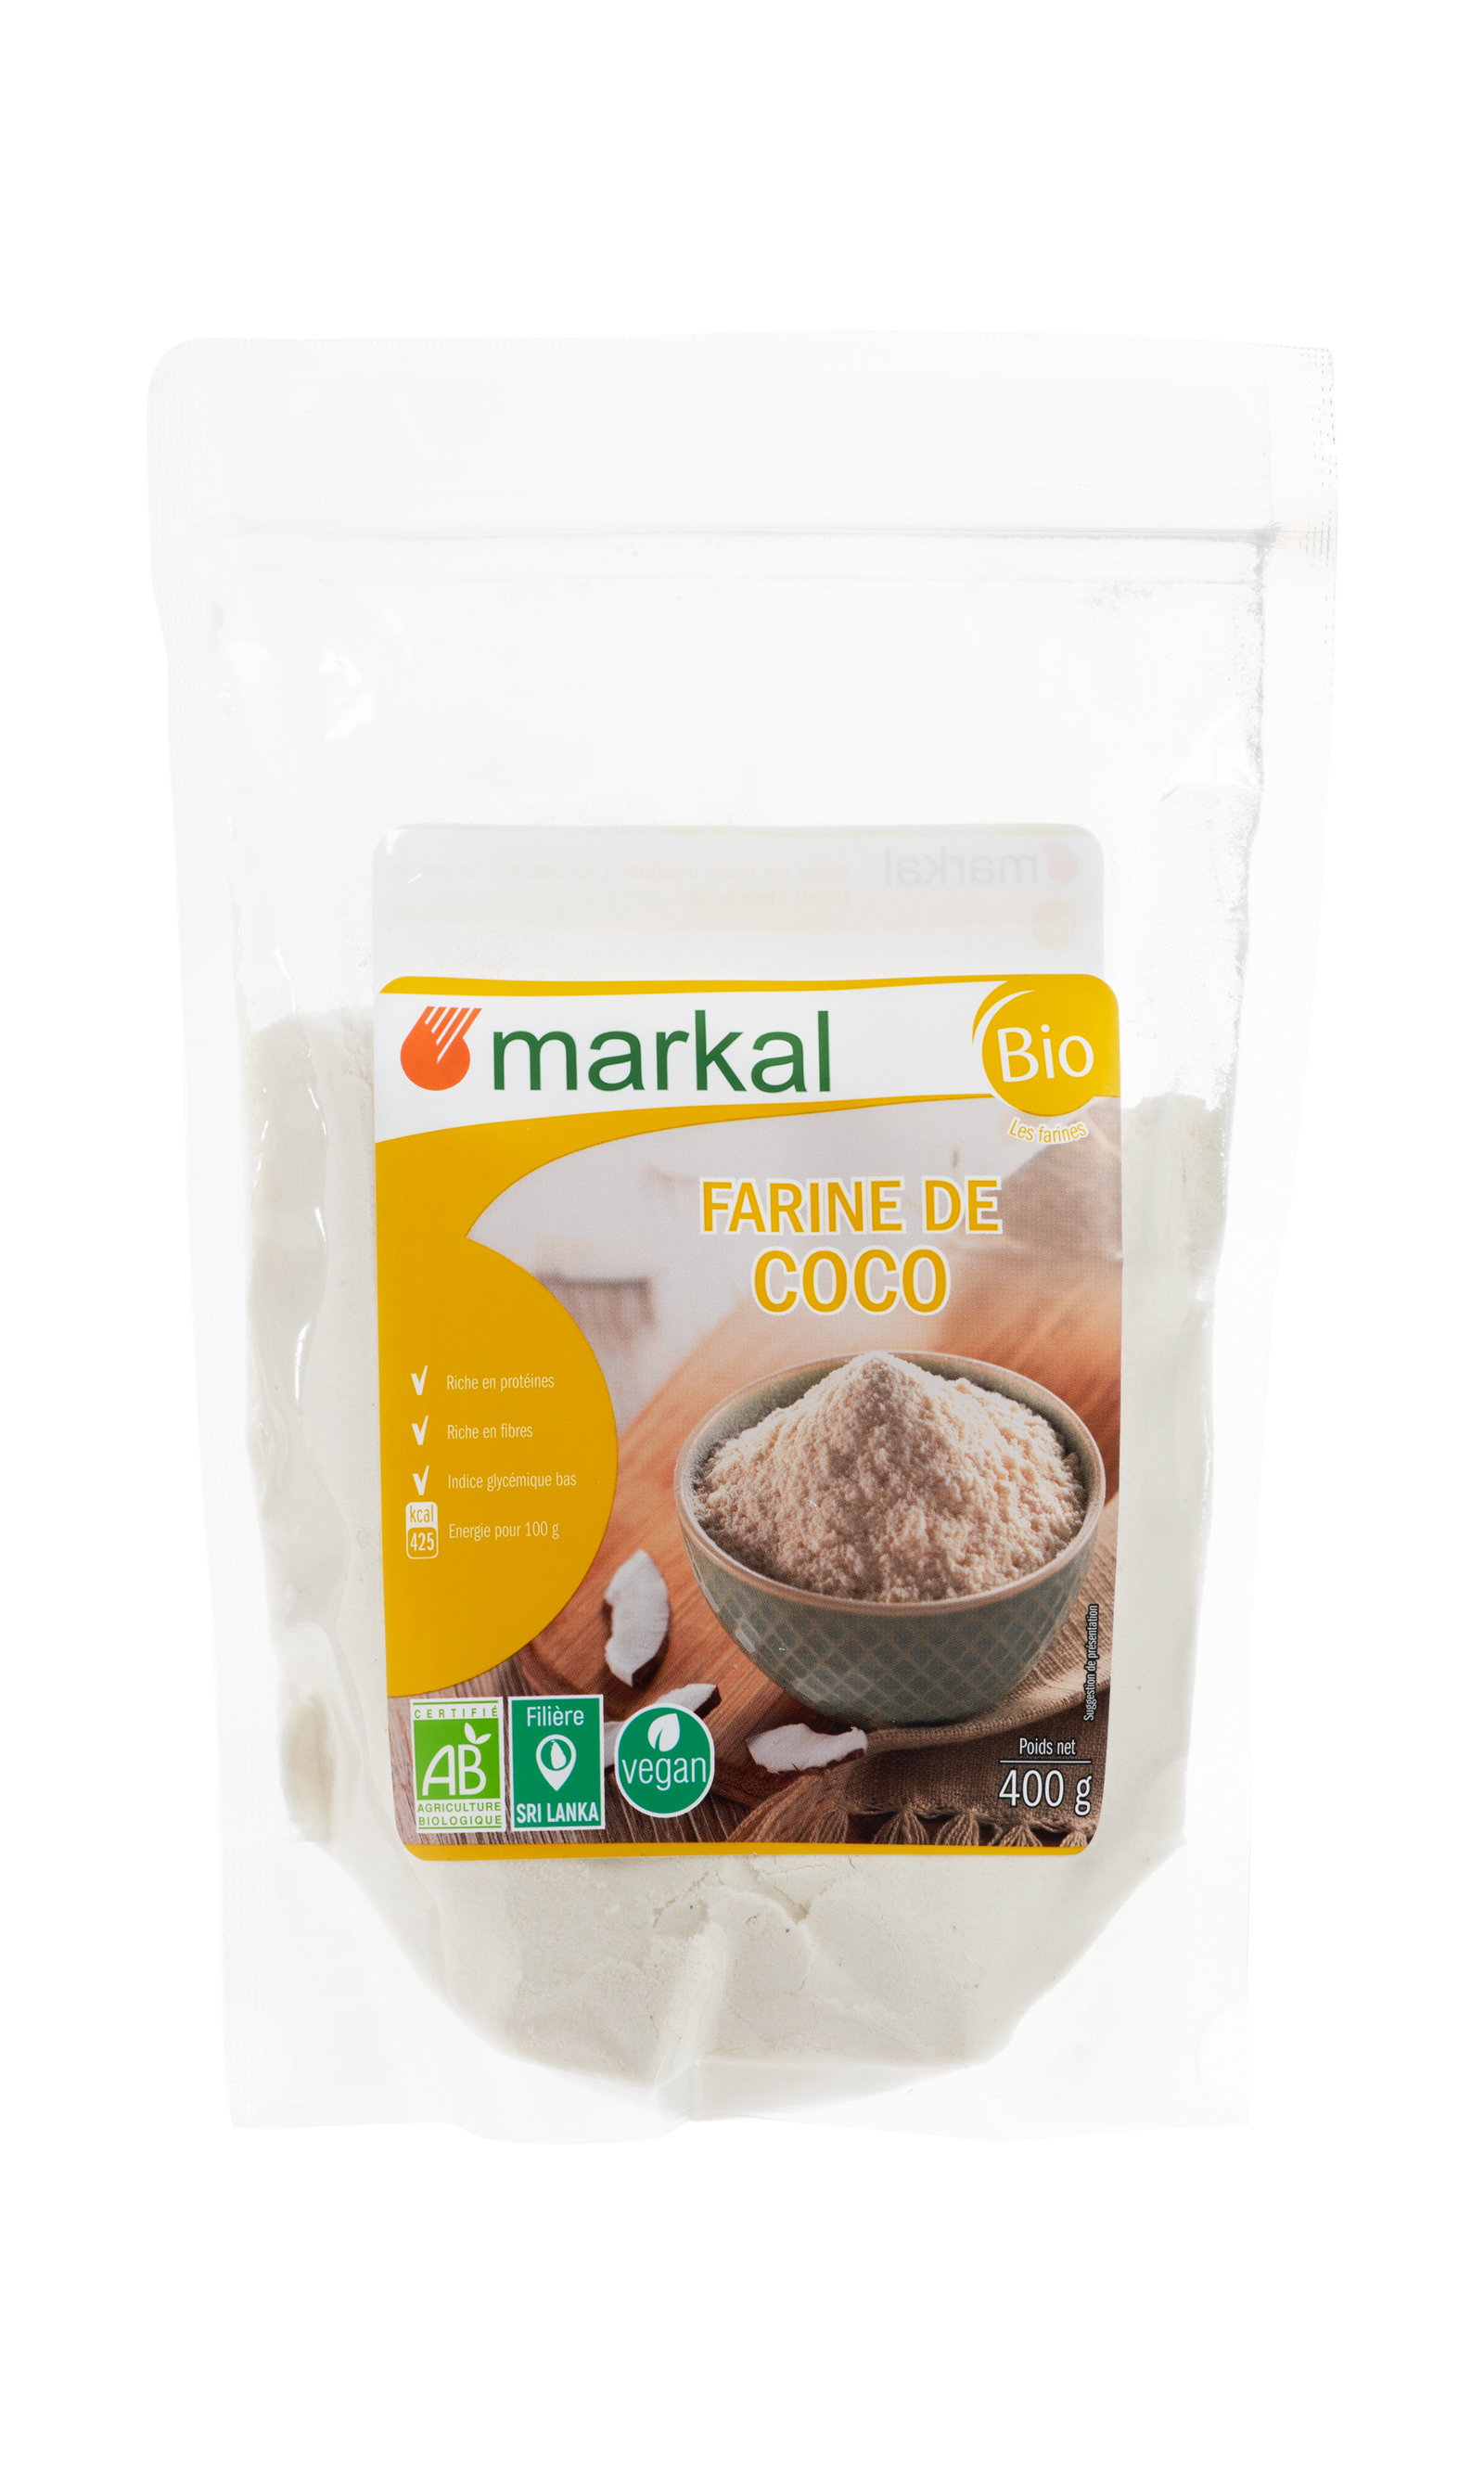 Farine de coco bio - Markal